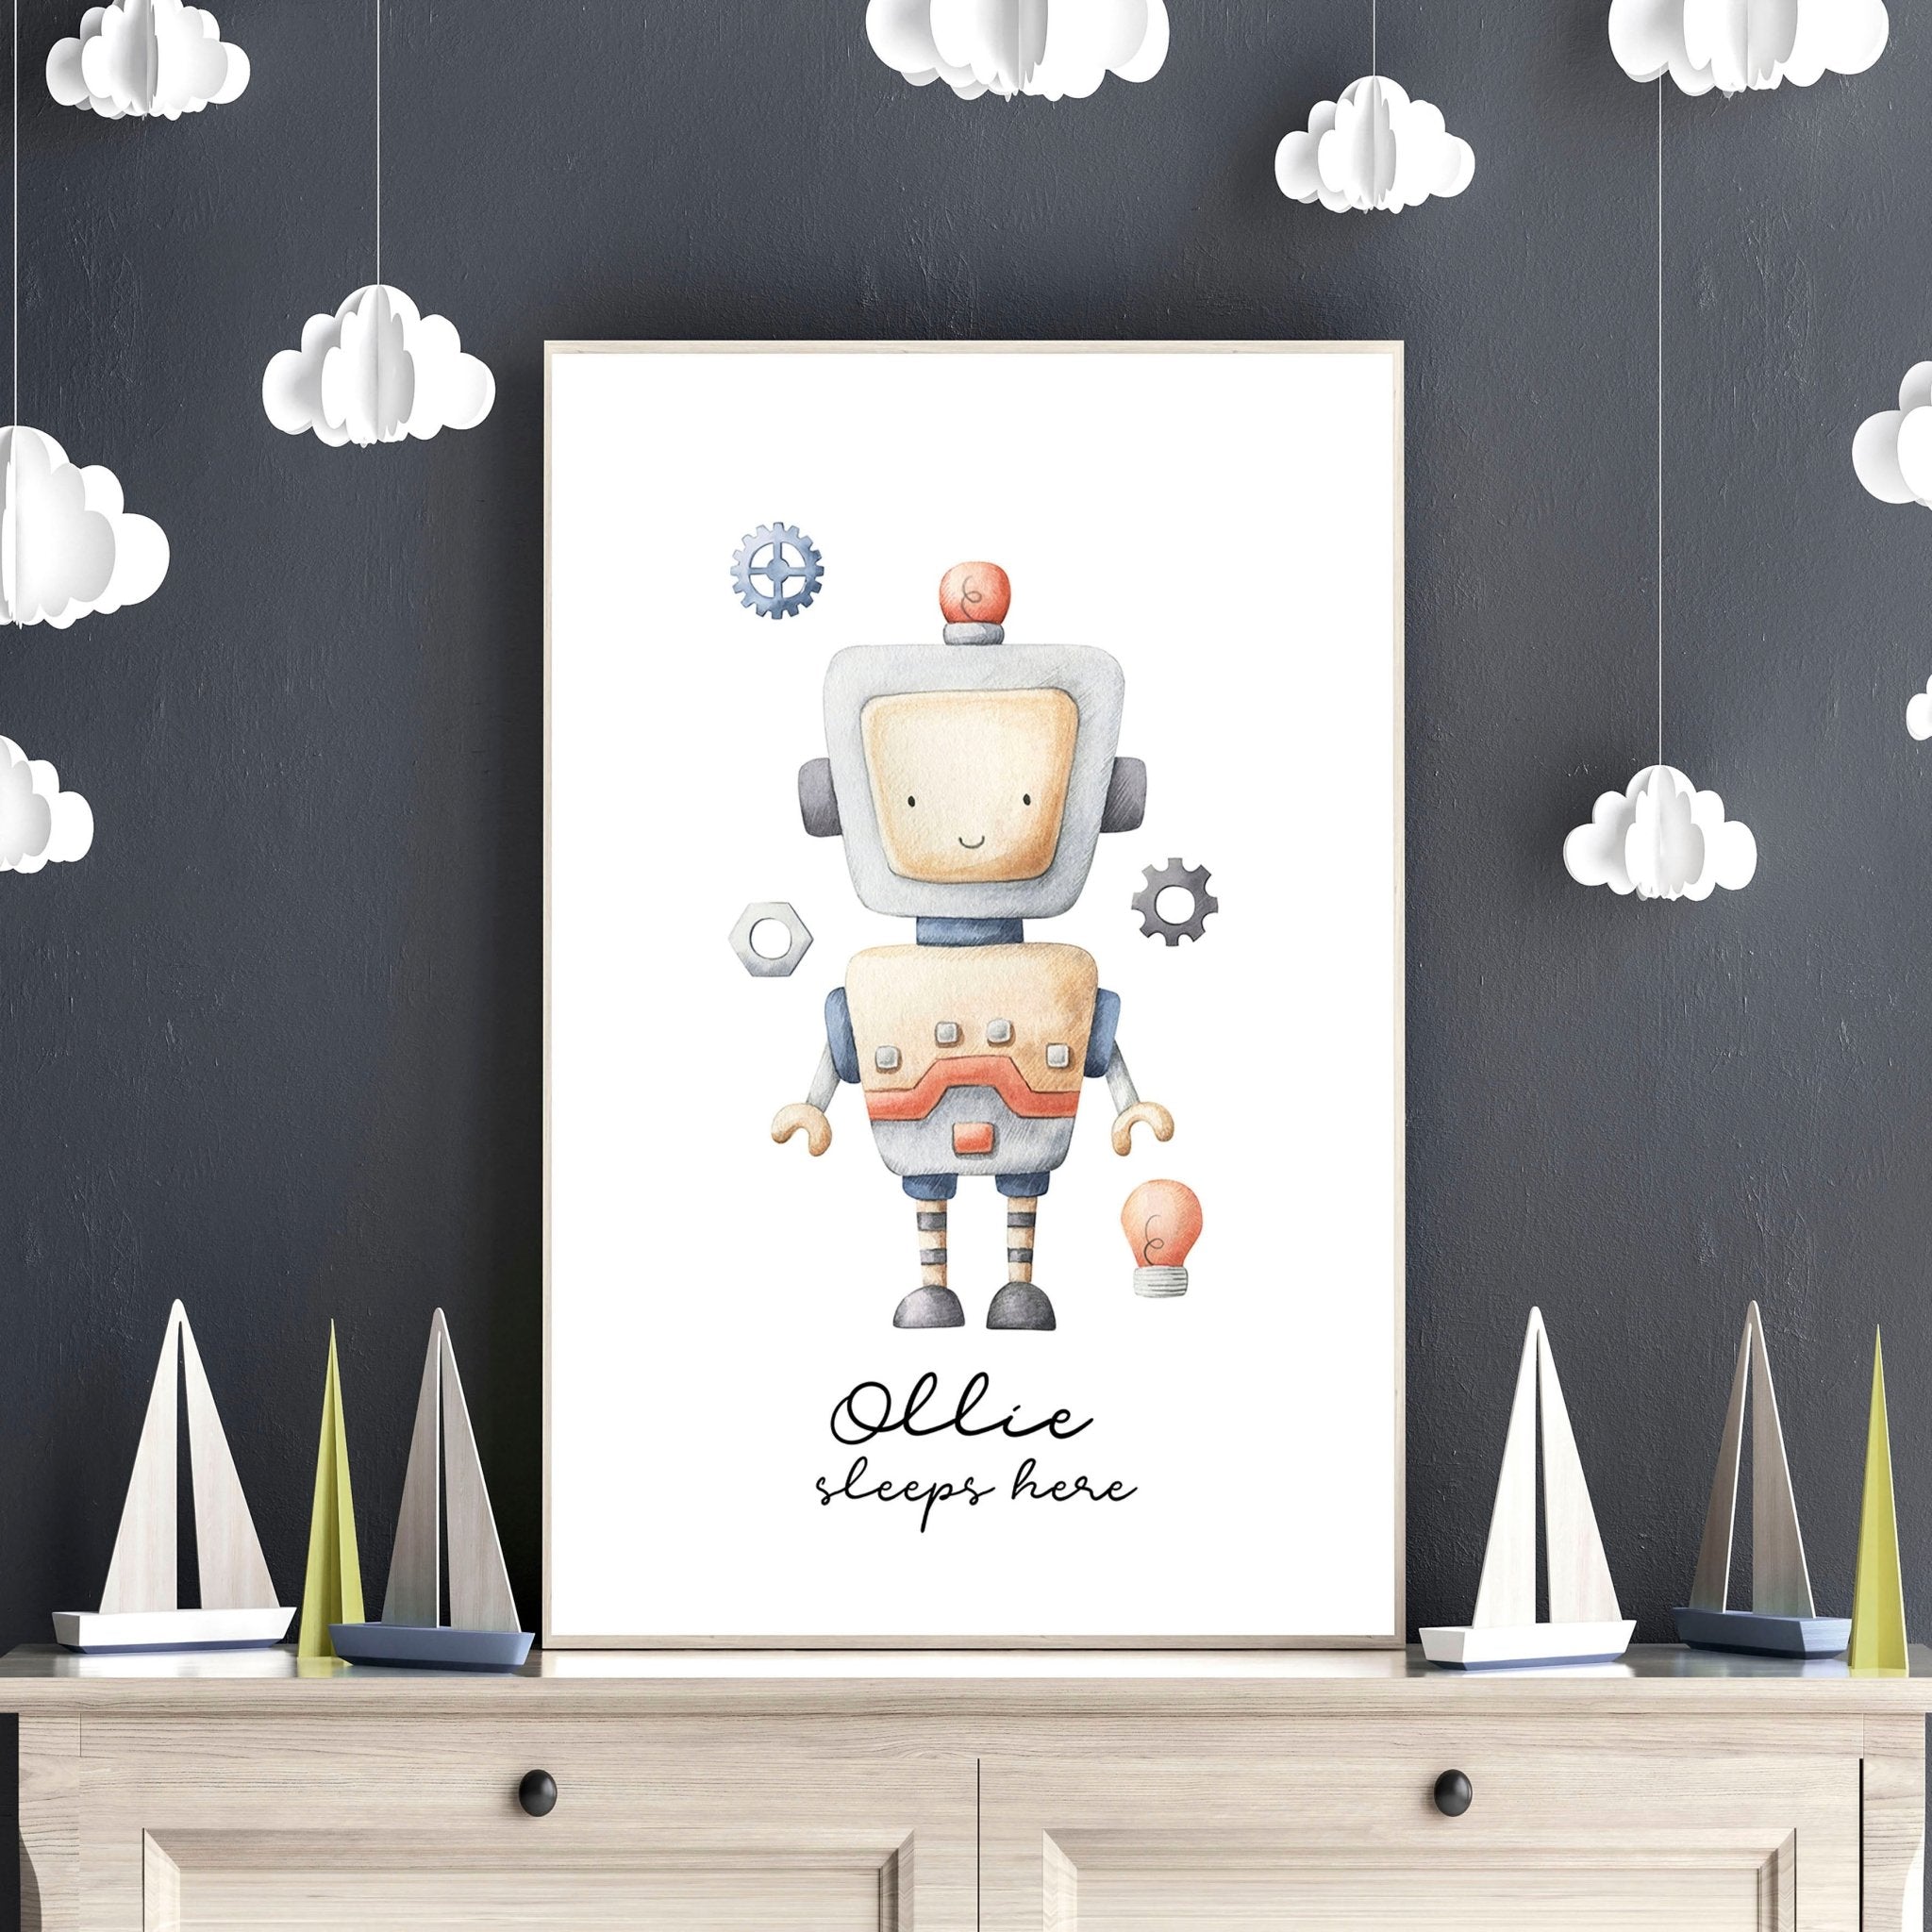 Impresión de arte de pared enmarcada con temática espacial para la decoración de la habitación del niño pequeño, signo de nombre de arte Robot personalizado azul pastel para la decoración de la pared del cuarto de niños del bebé